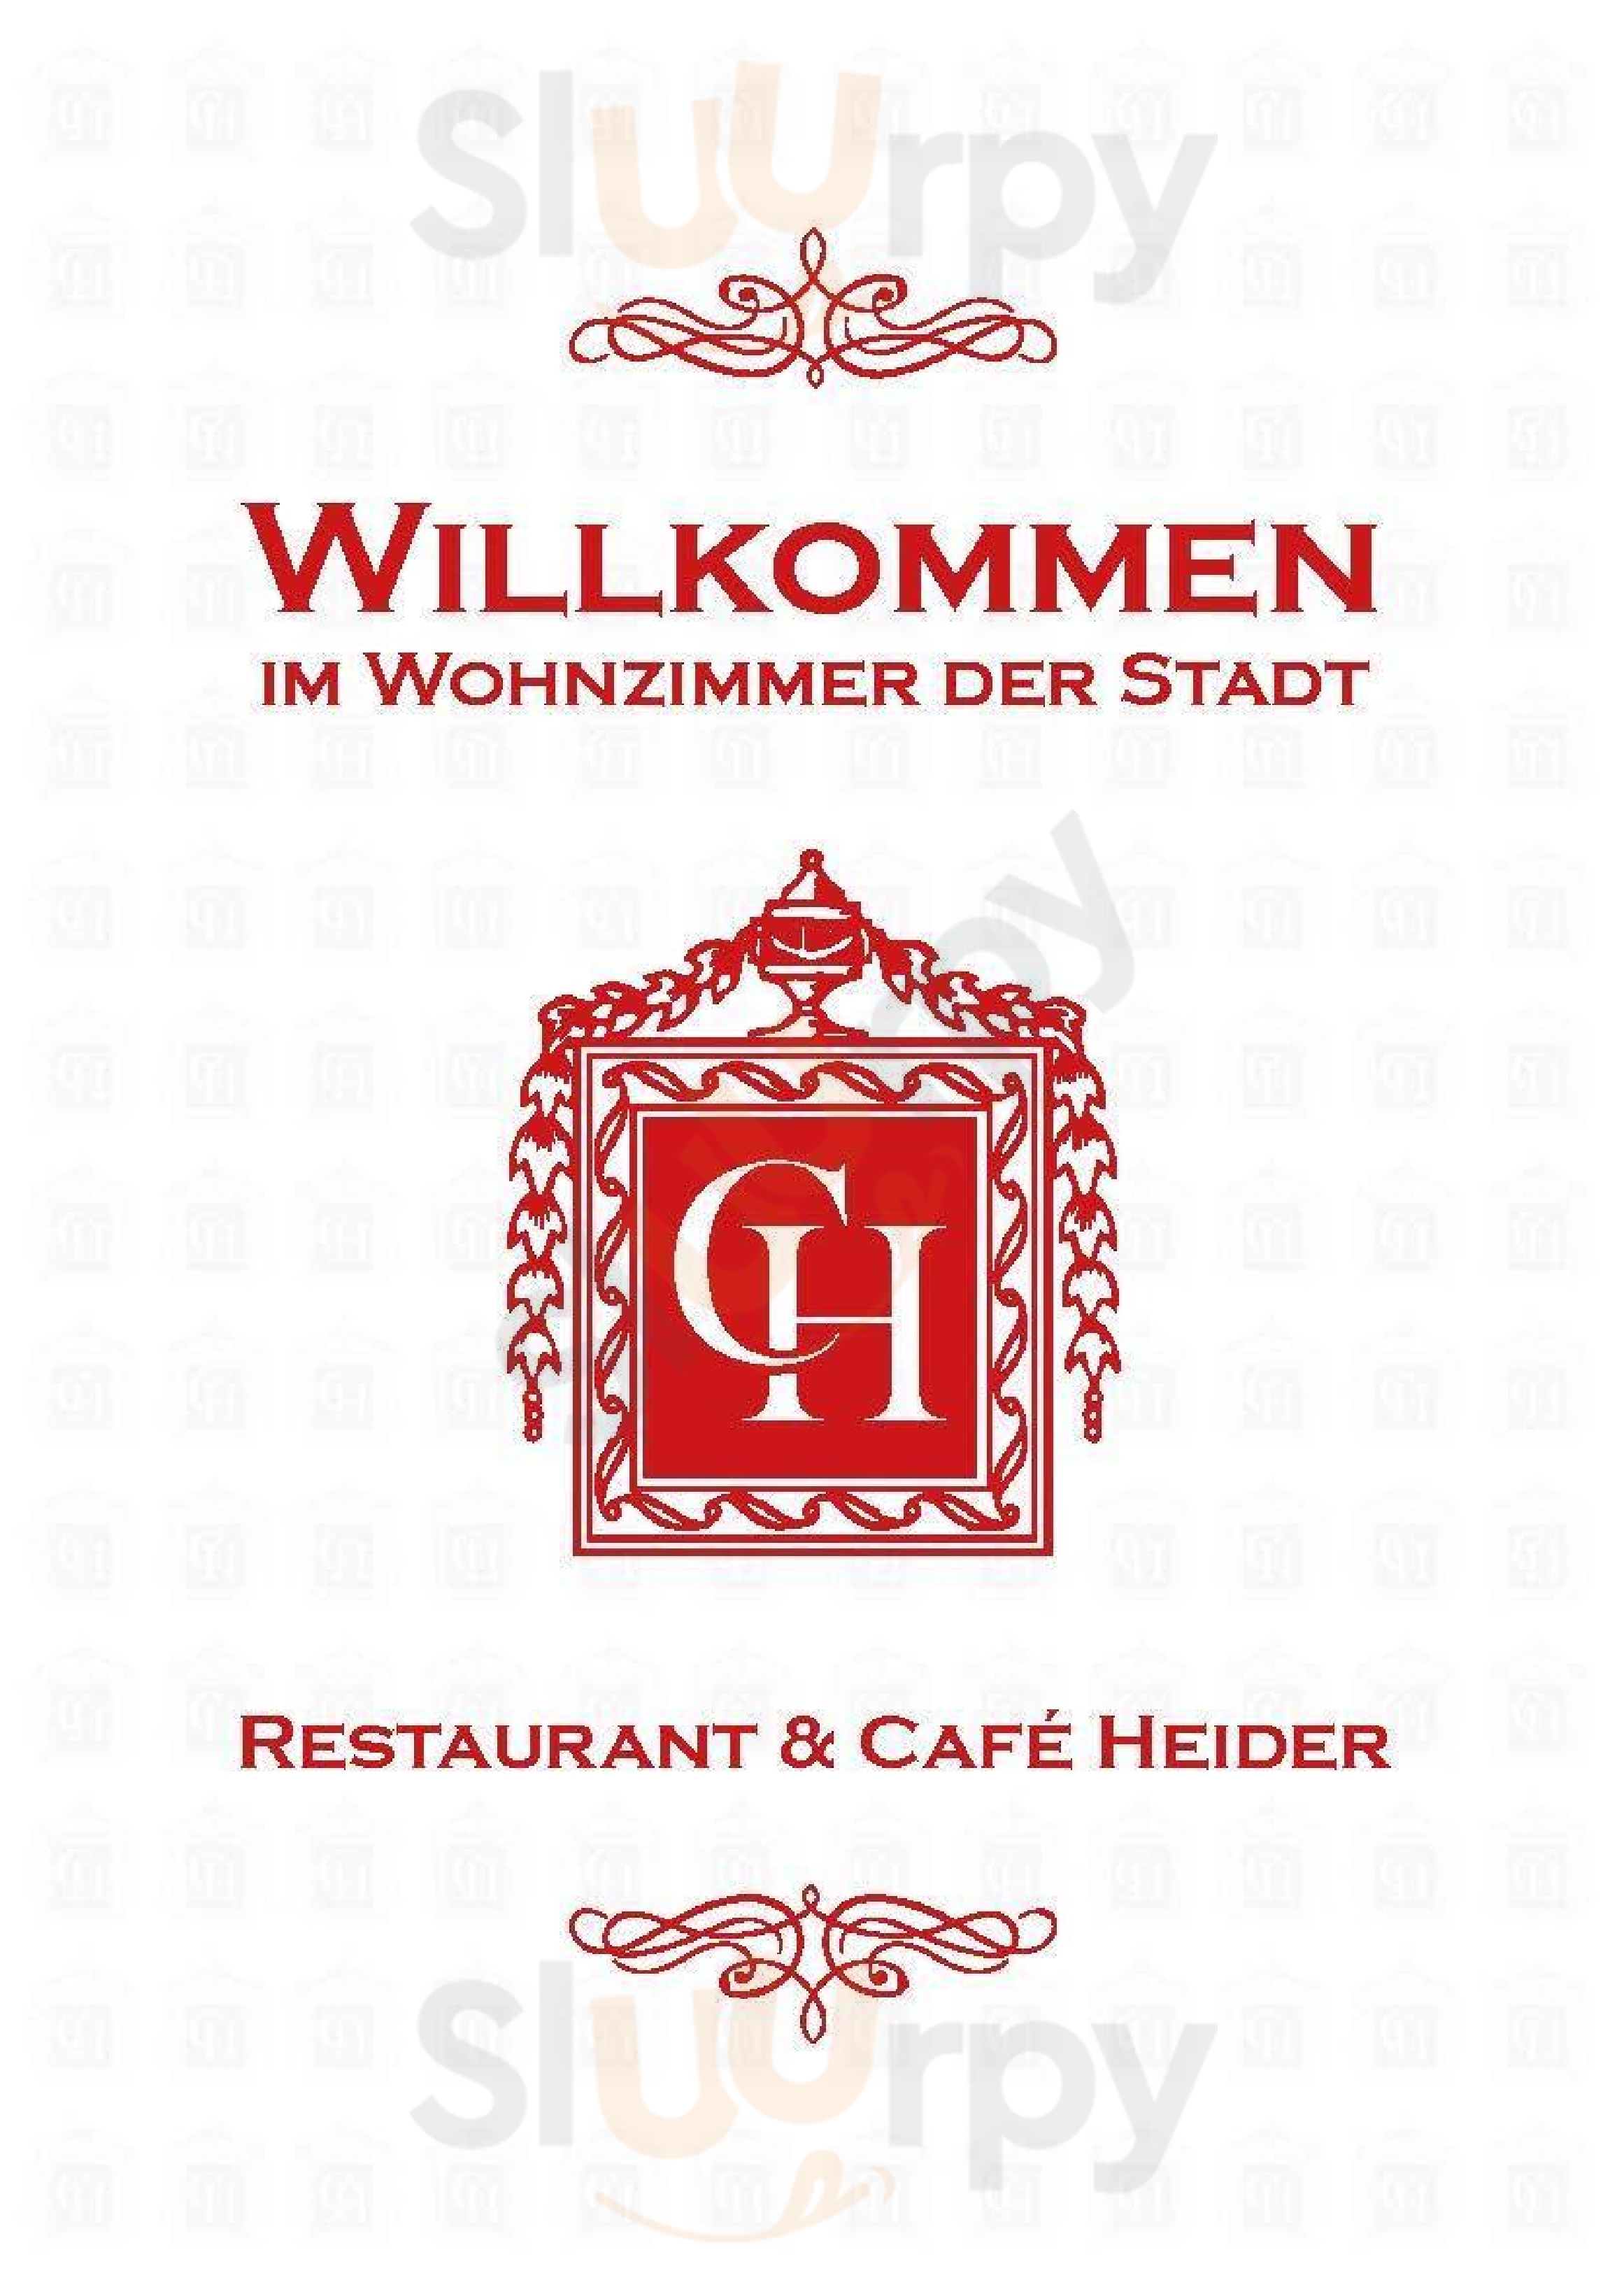 Das Café Heider Potsdam Menu - 1